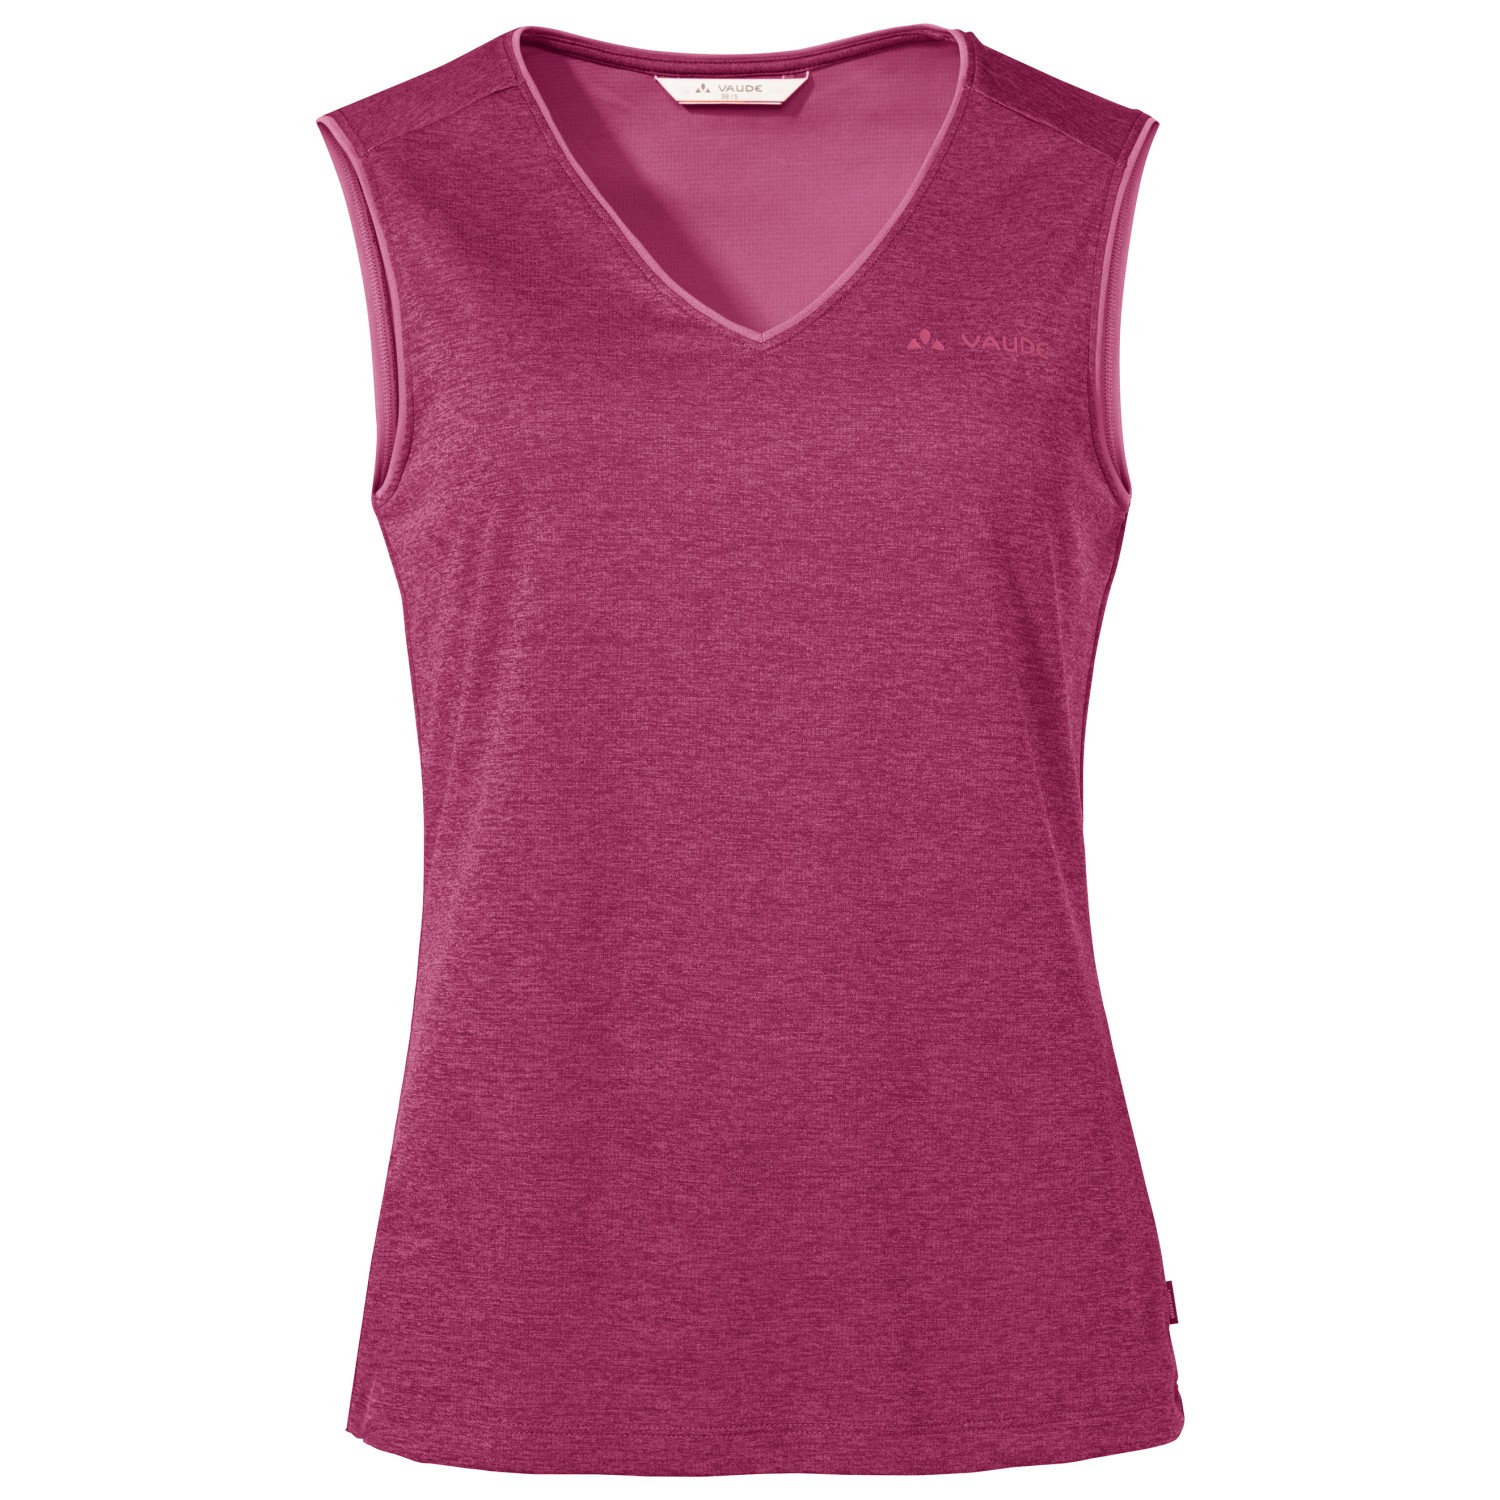 Функциональная рубашка Vaude Women's Essential Top, цвет Rich Pink женский укороченный топ для занятий йогой и спортом